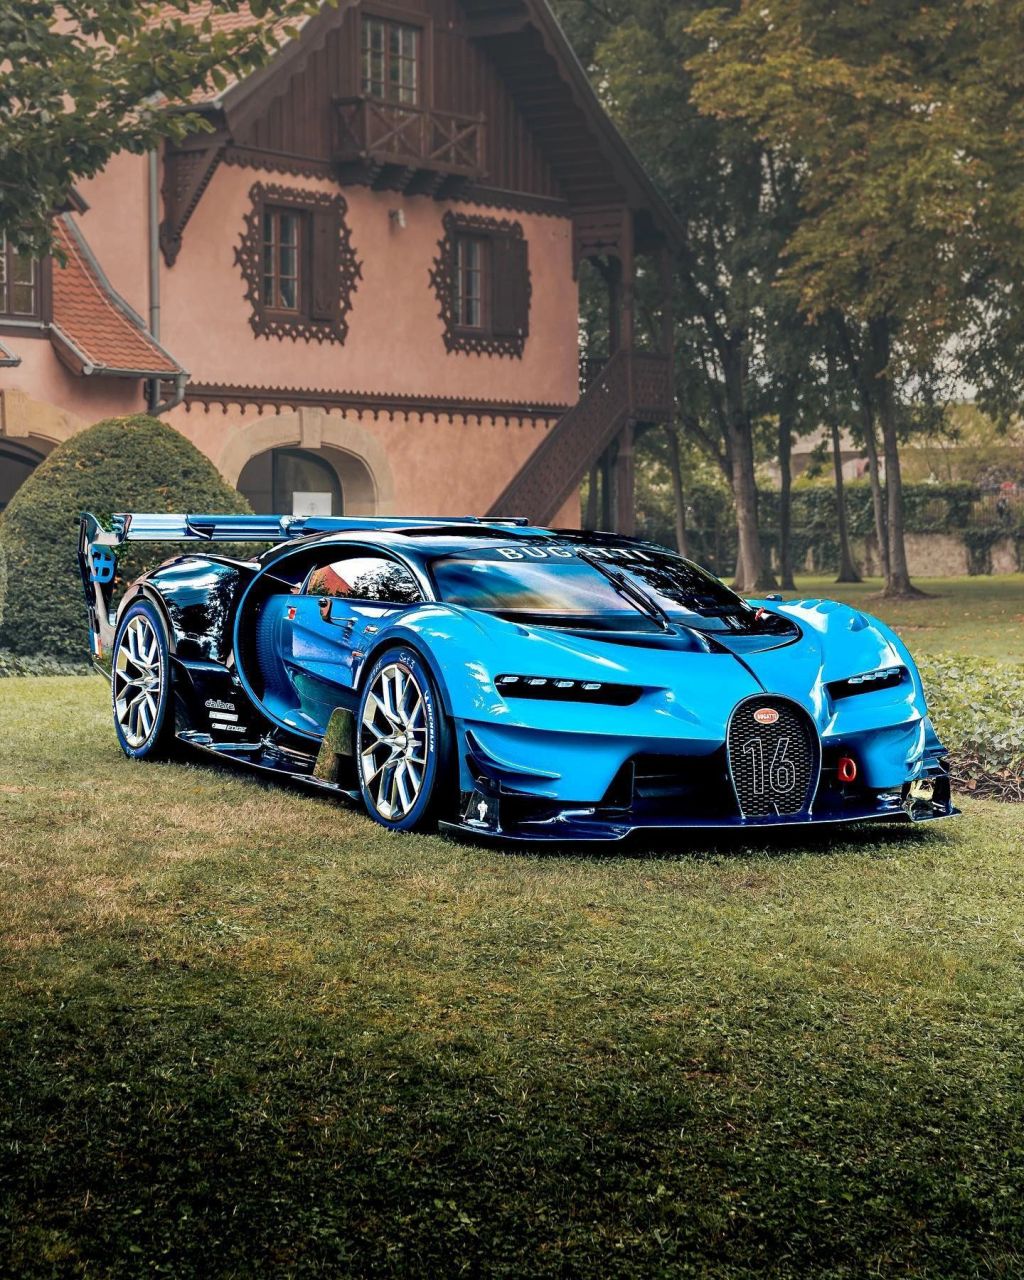 布加迪vision gt是法国超级跑车制造商布加迪(bugatti)于2015年推出的